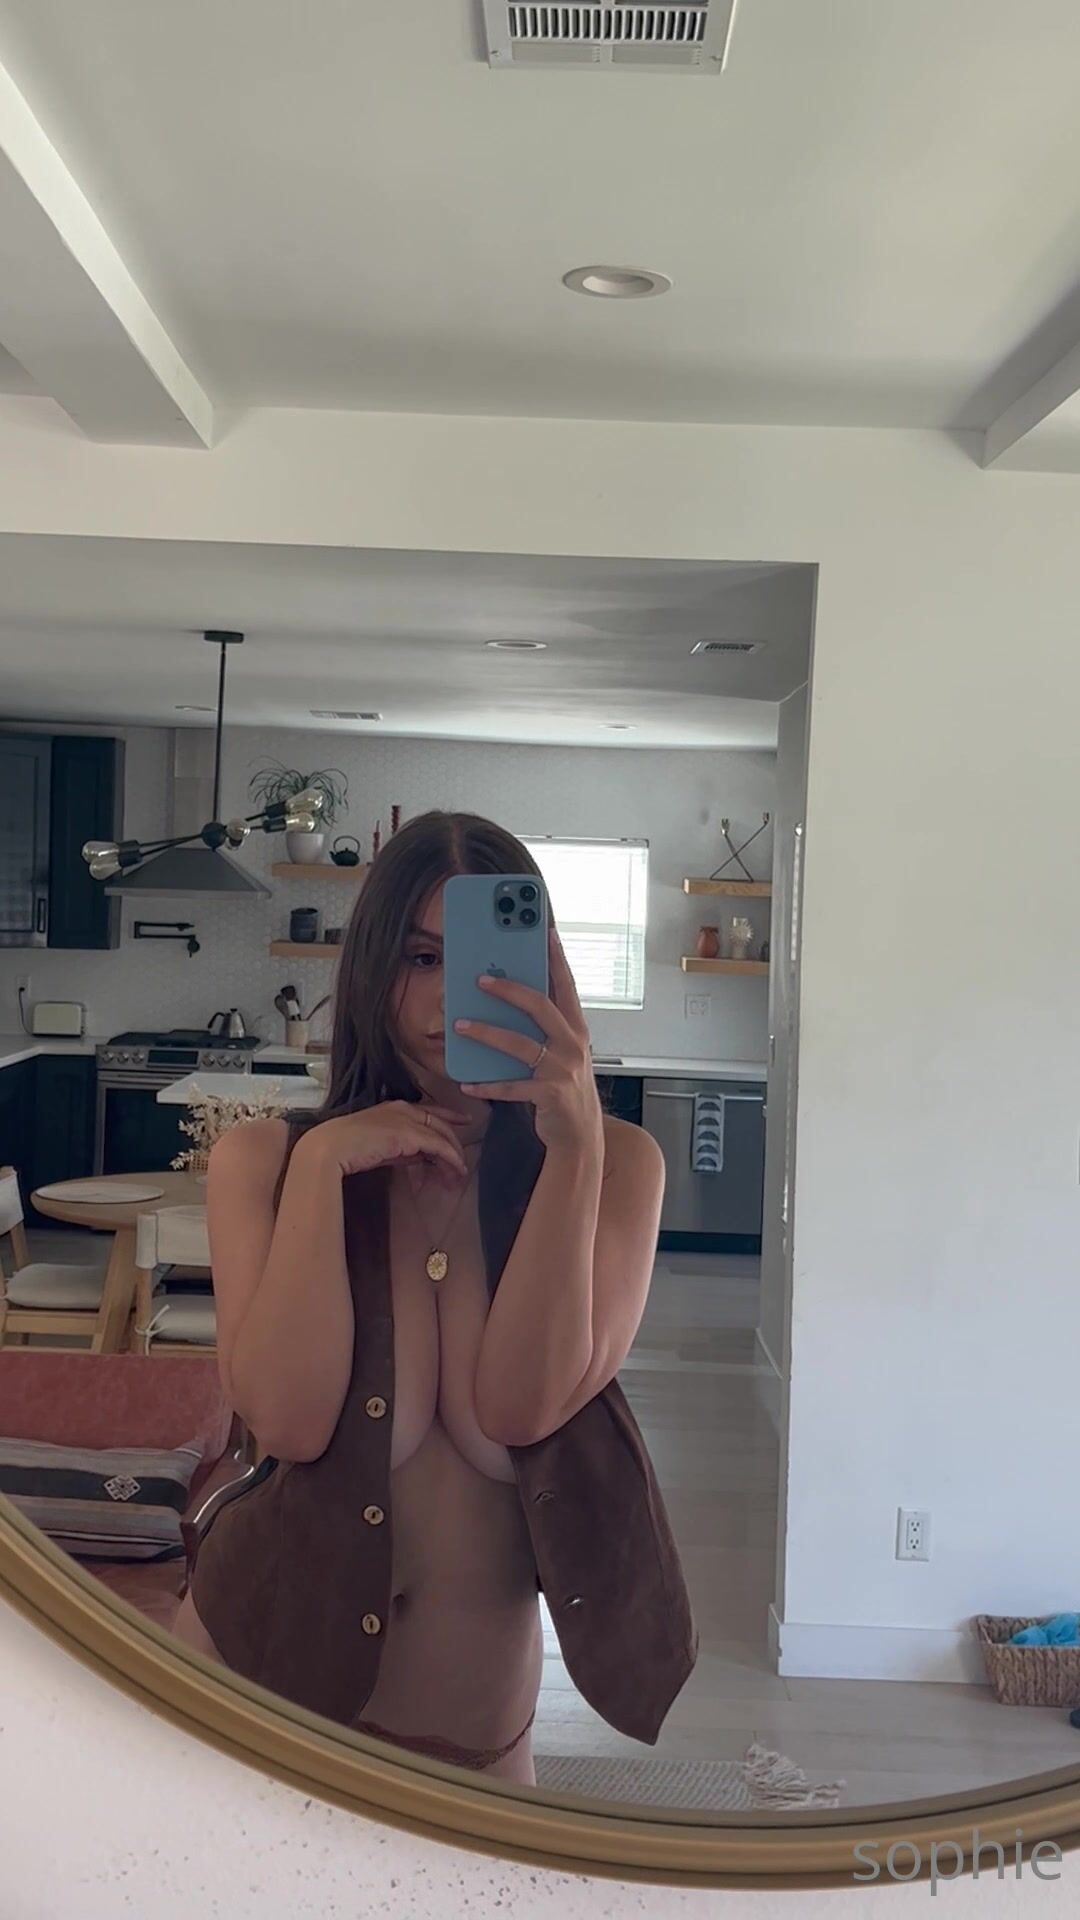 Sophie big boobs mirror selfie